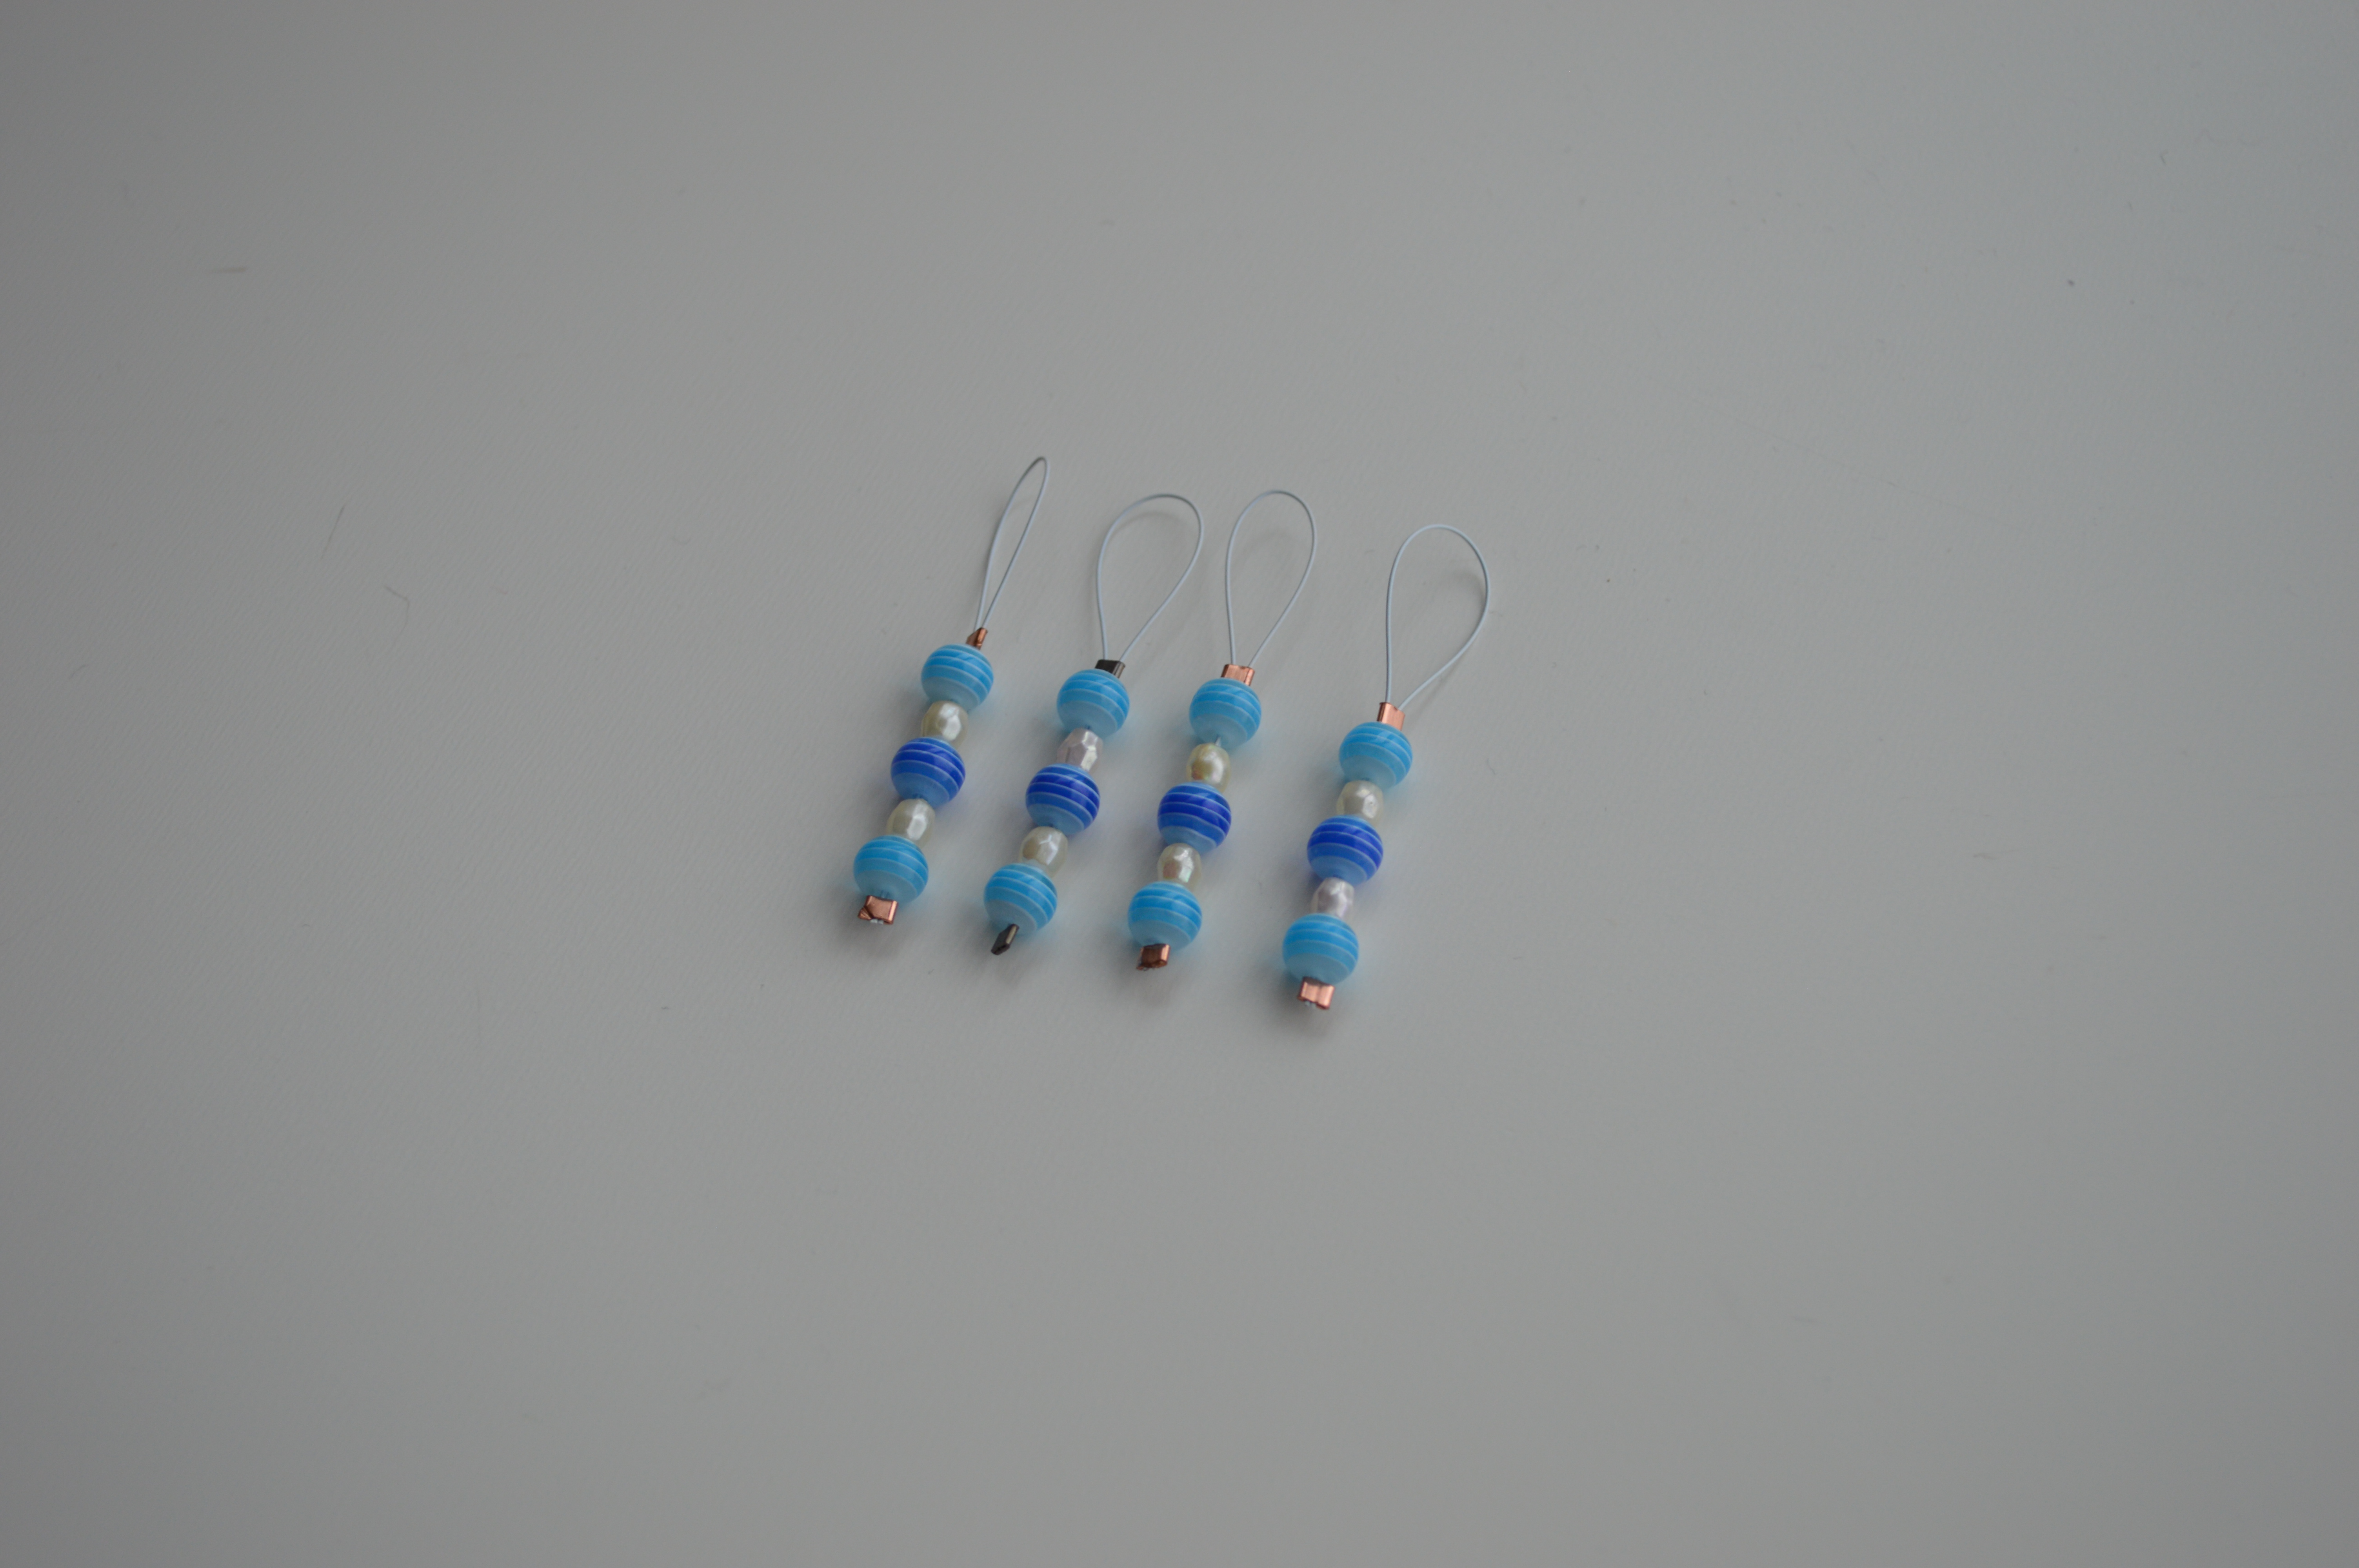 4 stk. lyseblå strikkemarkører med perler